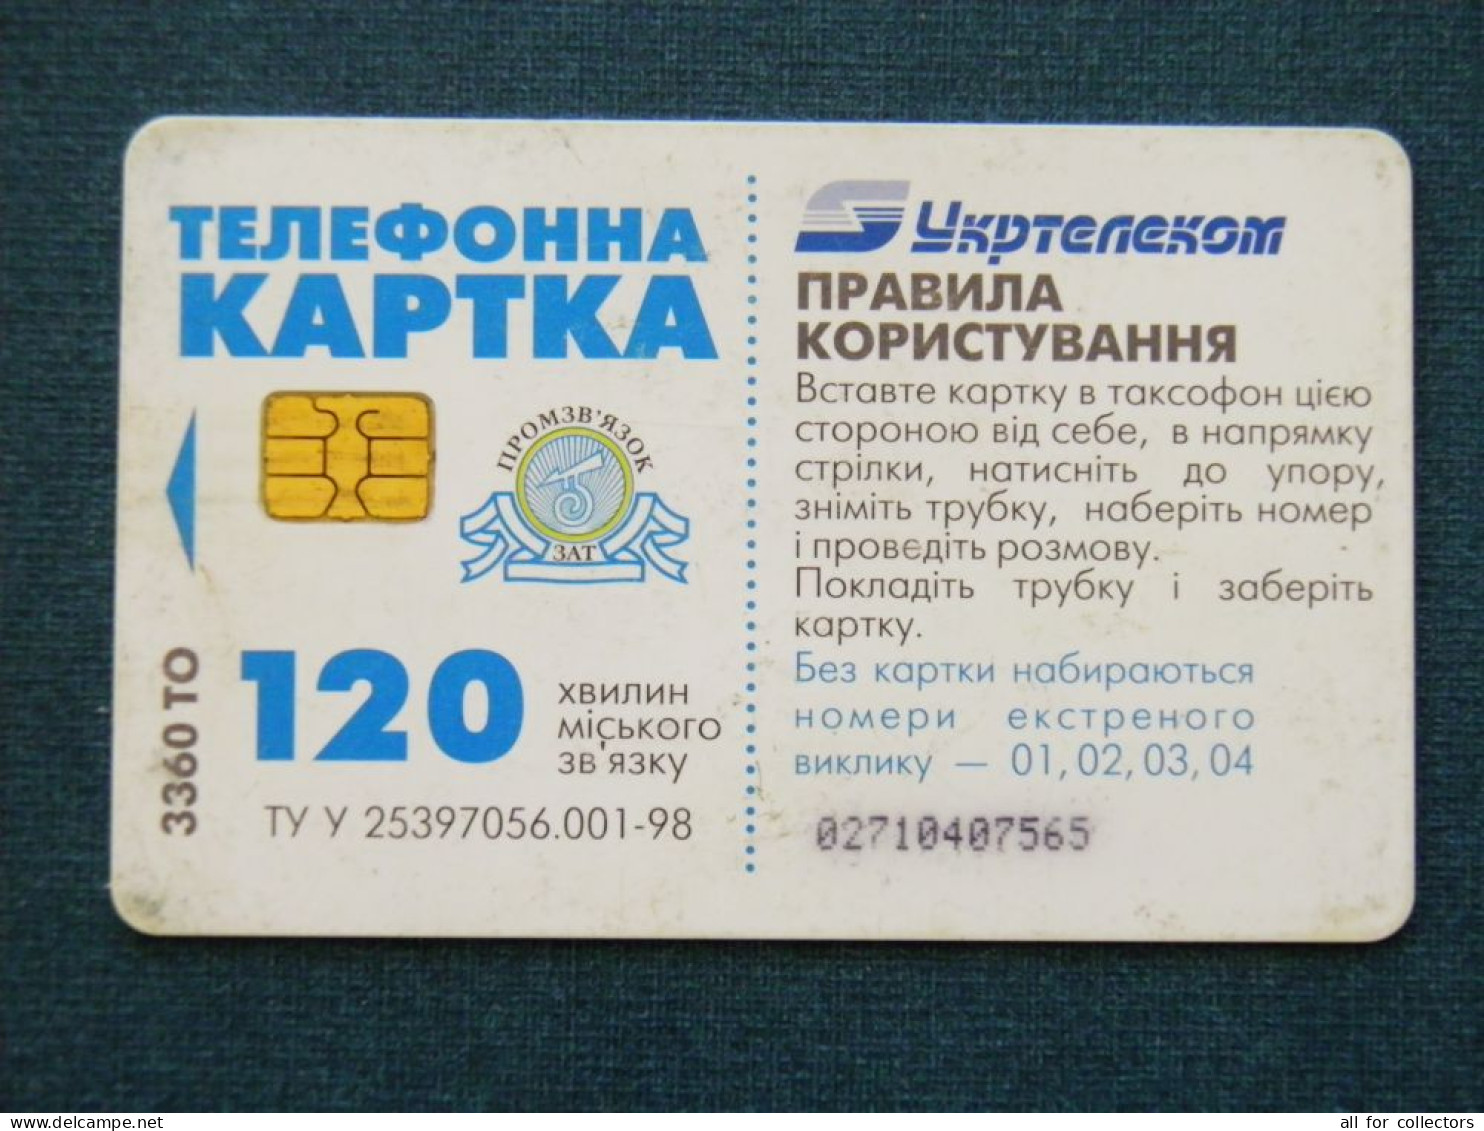 Phonecard Chip Advertising Argo Vodka Drink 3360 Units 120 Calls UKRAINE - Ukraine